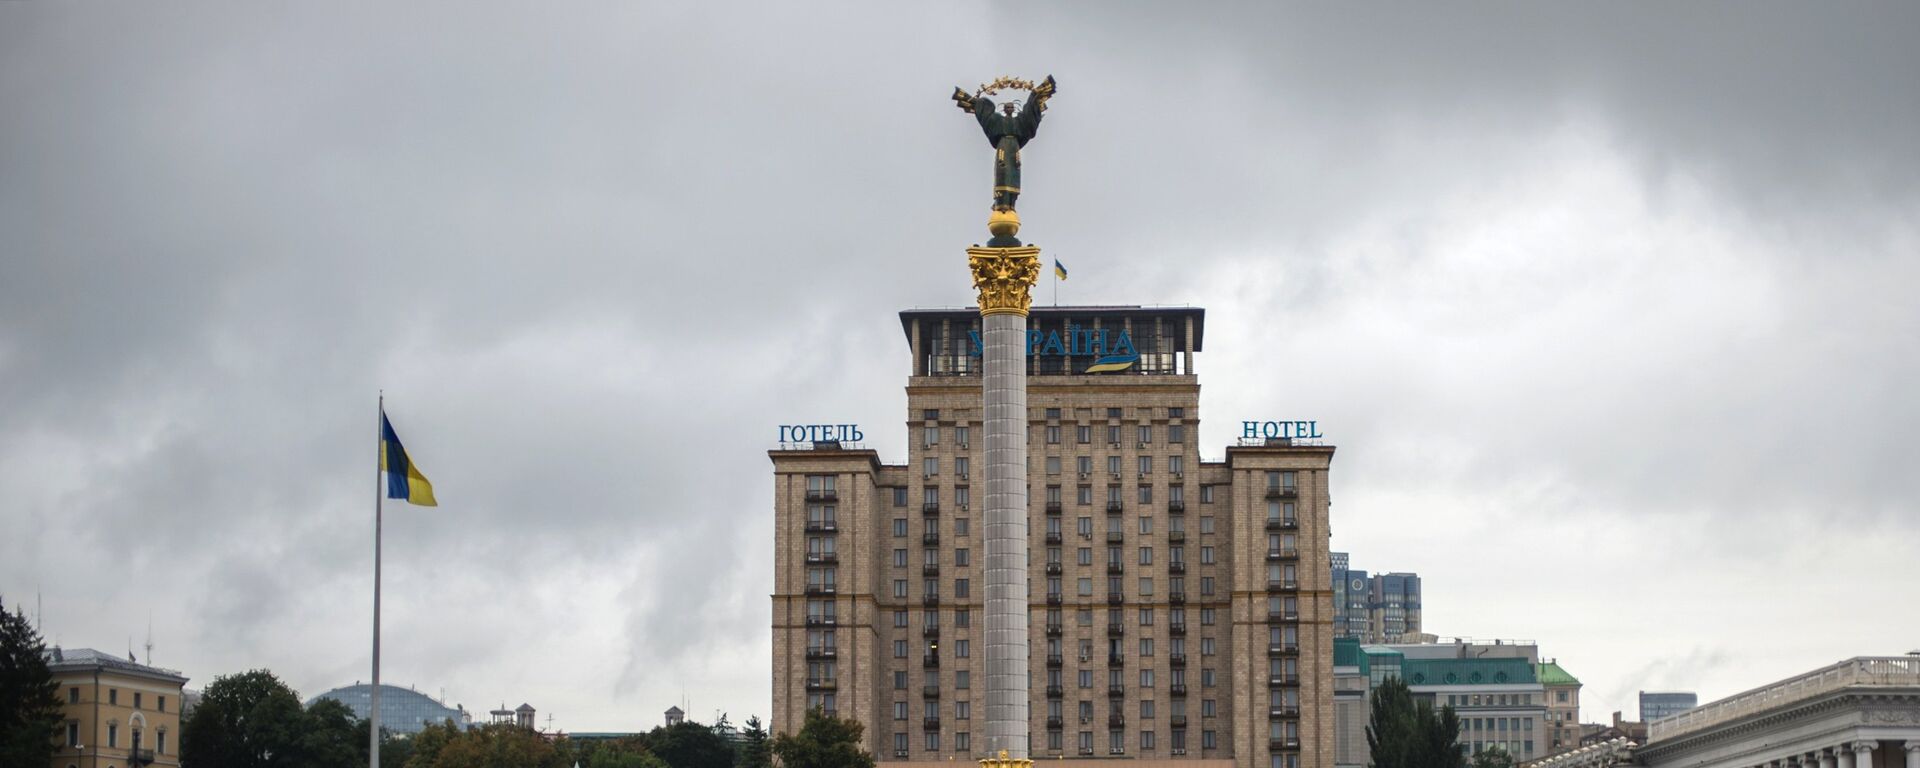 Города мира. Киев - Sputnik Грузия, 1920, 20.08.2021